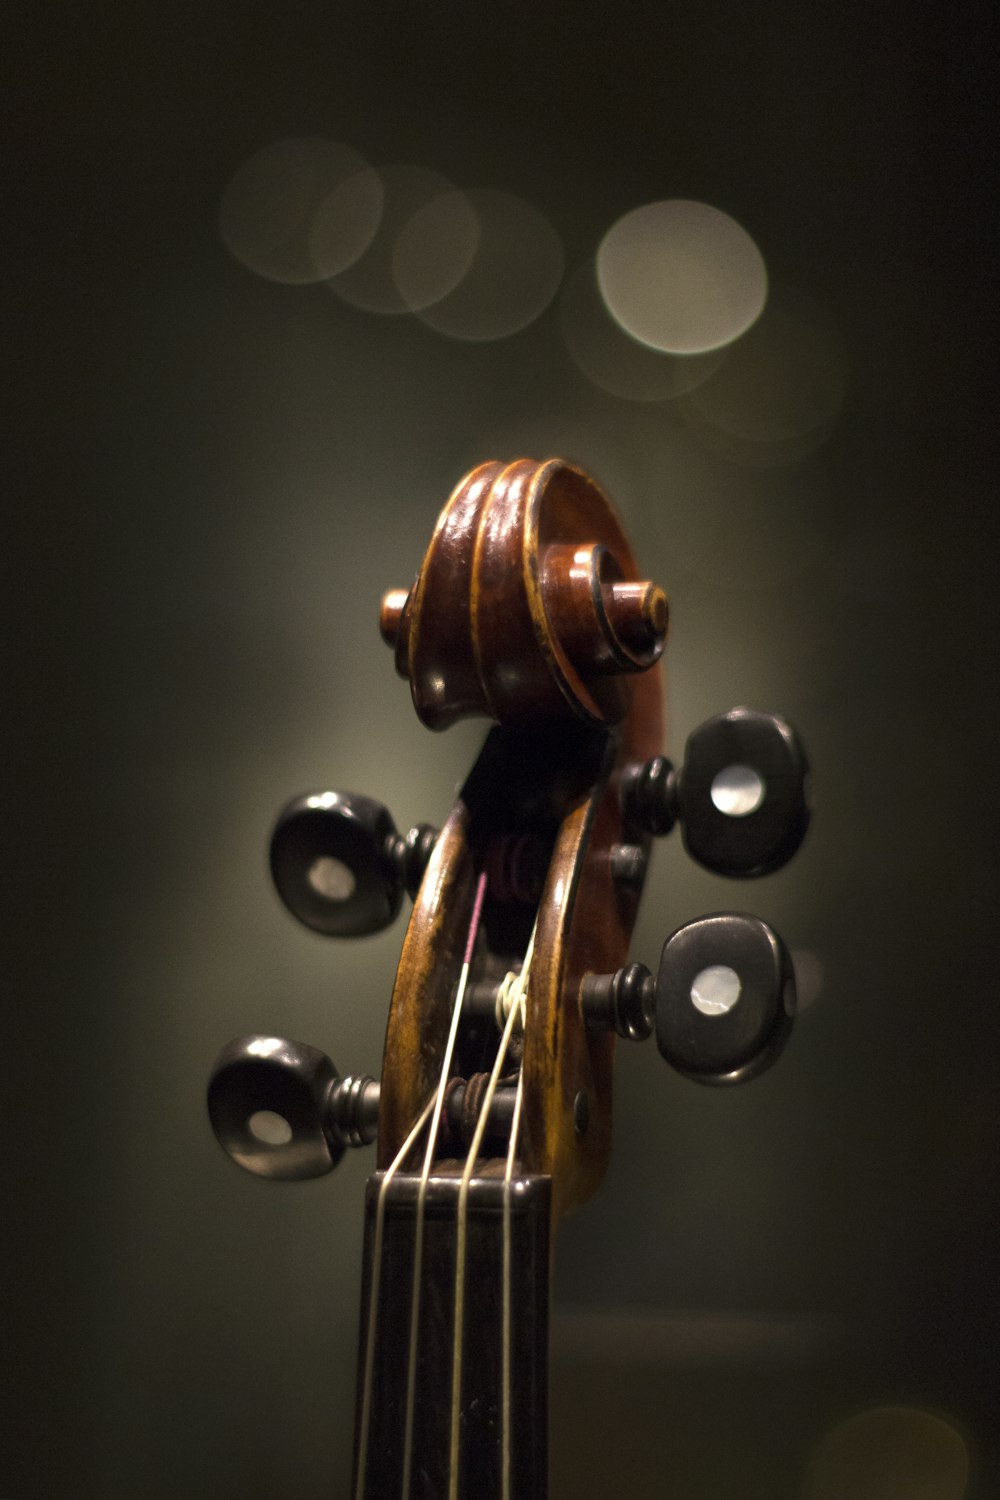 instrumento de cordas marrom em fotografia de close up